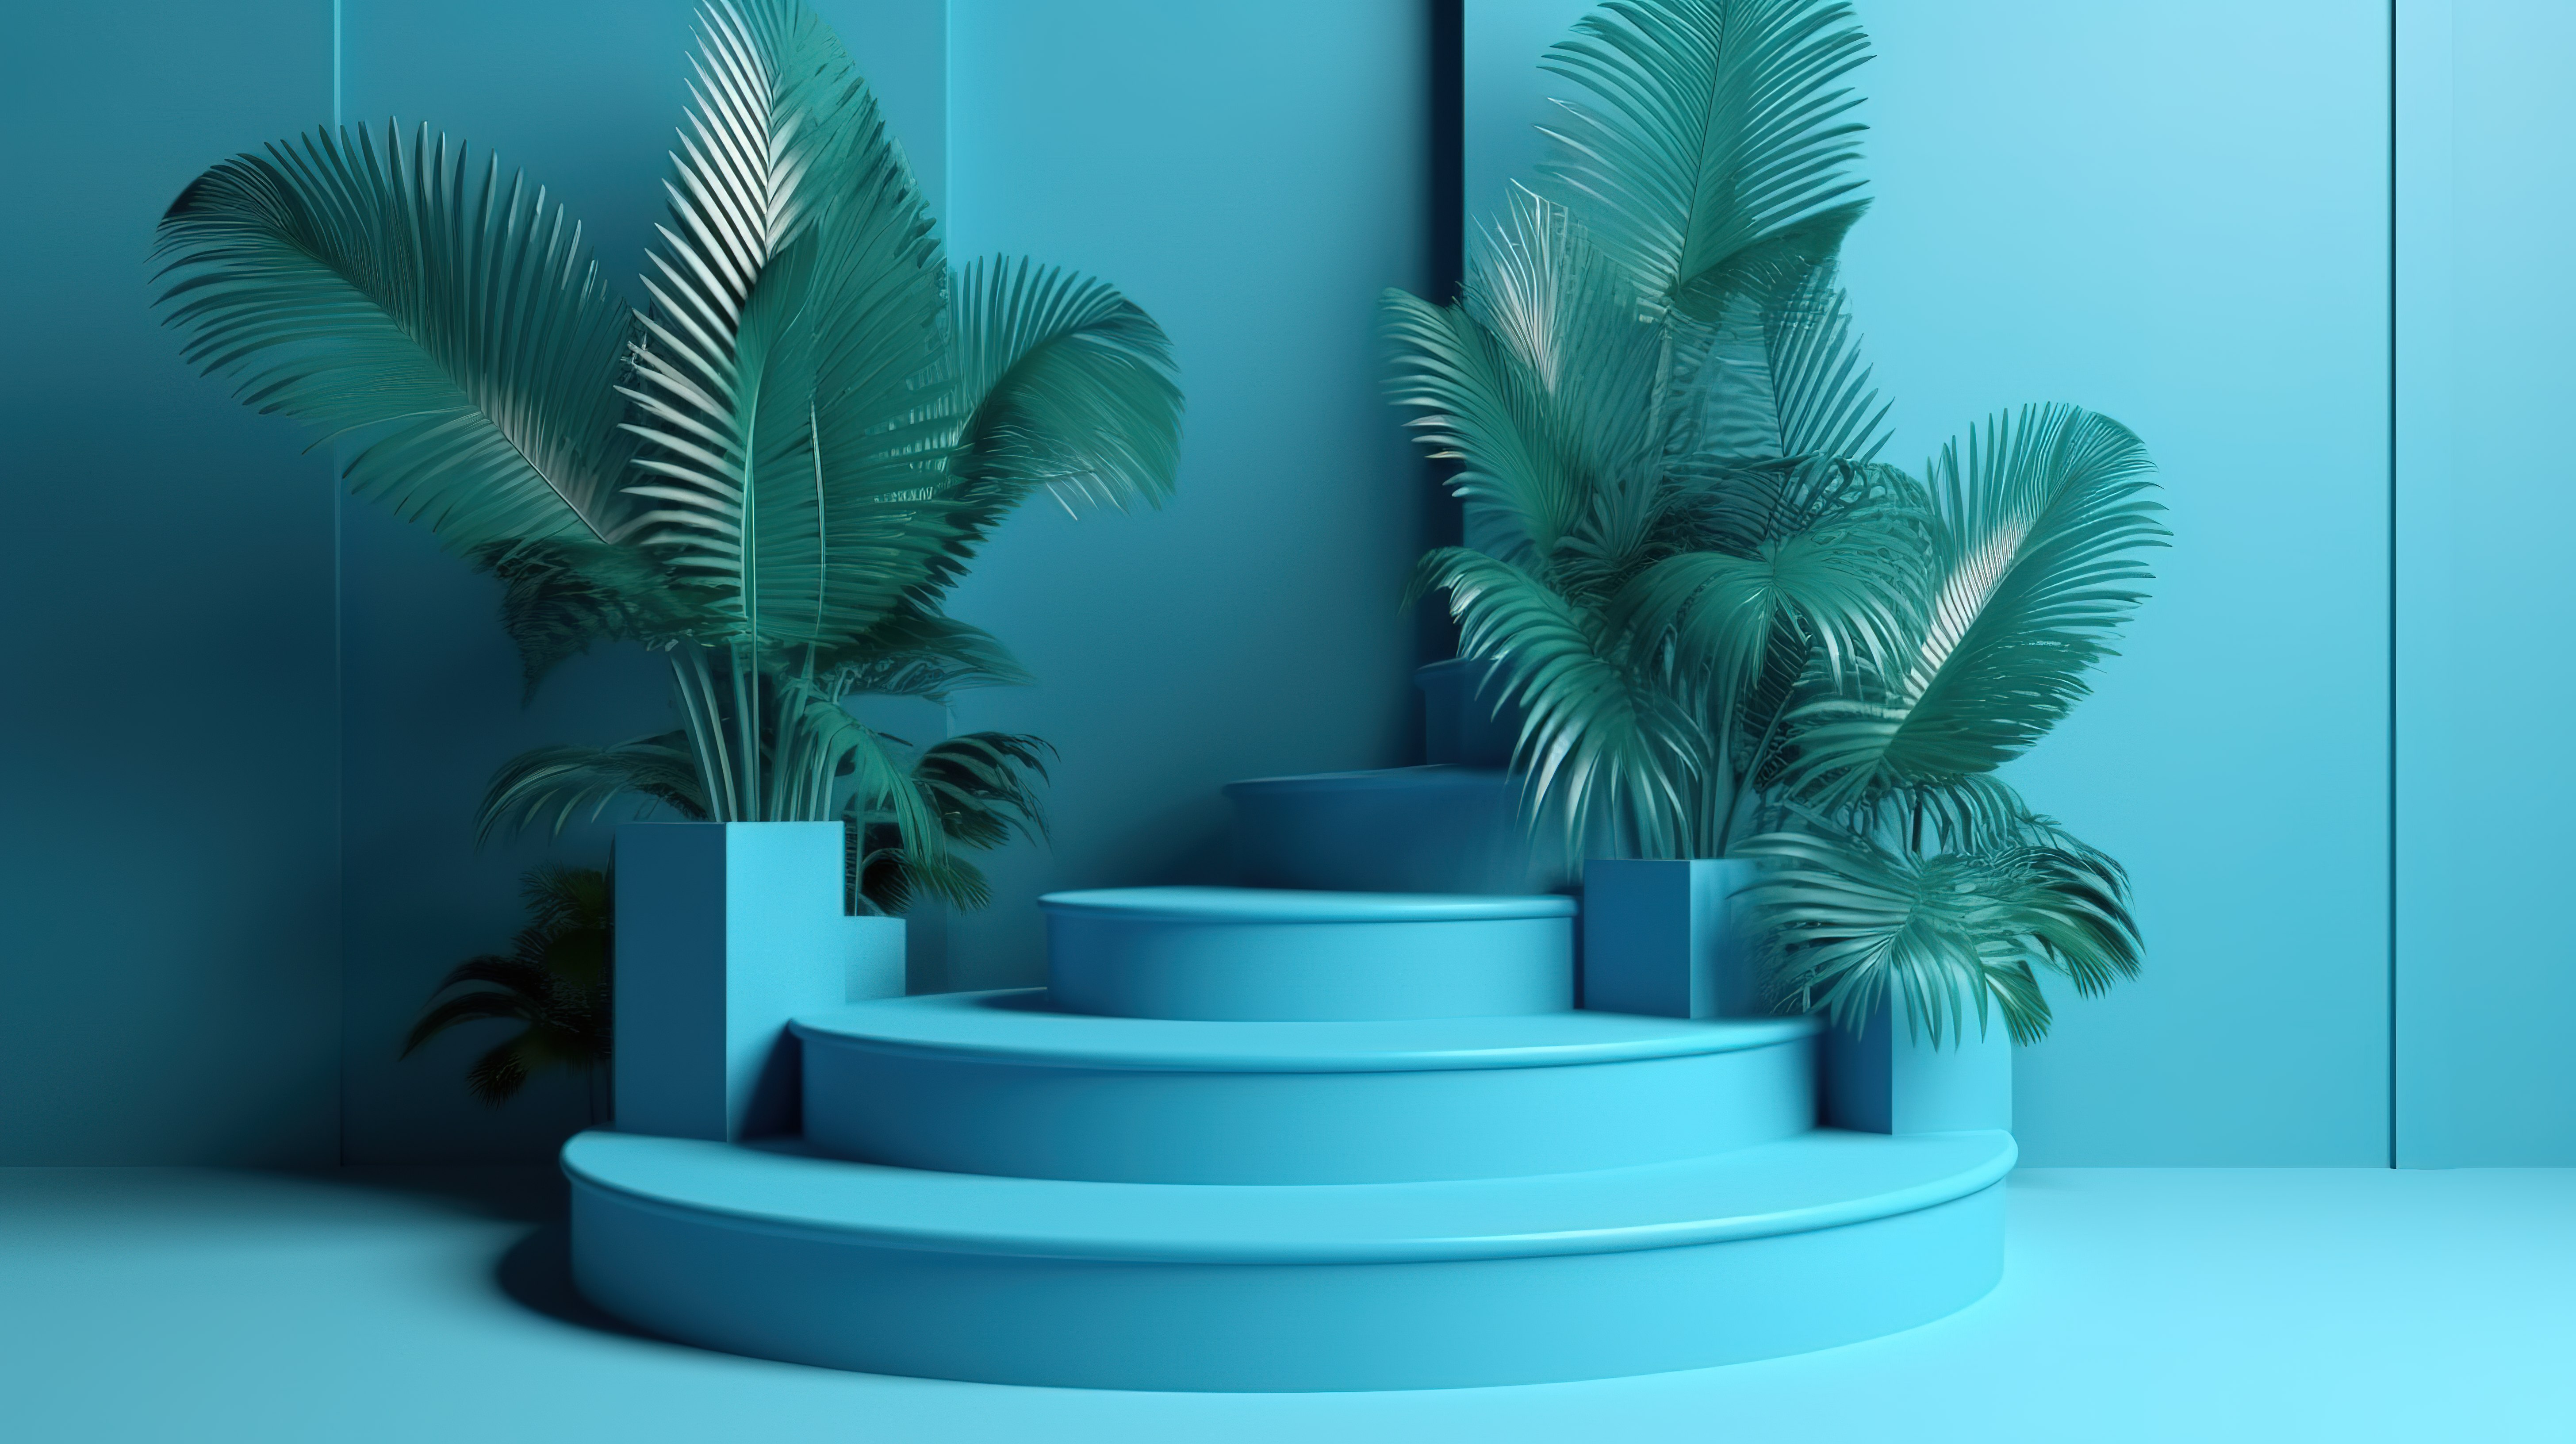 抽象的蓝色背景与热带植物展示在 3d 台阶渲染图片